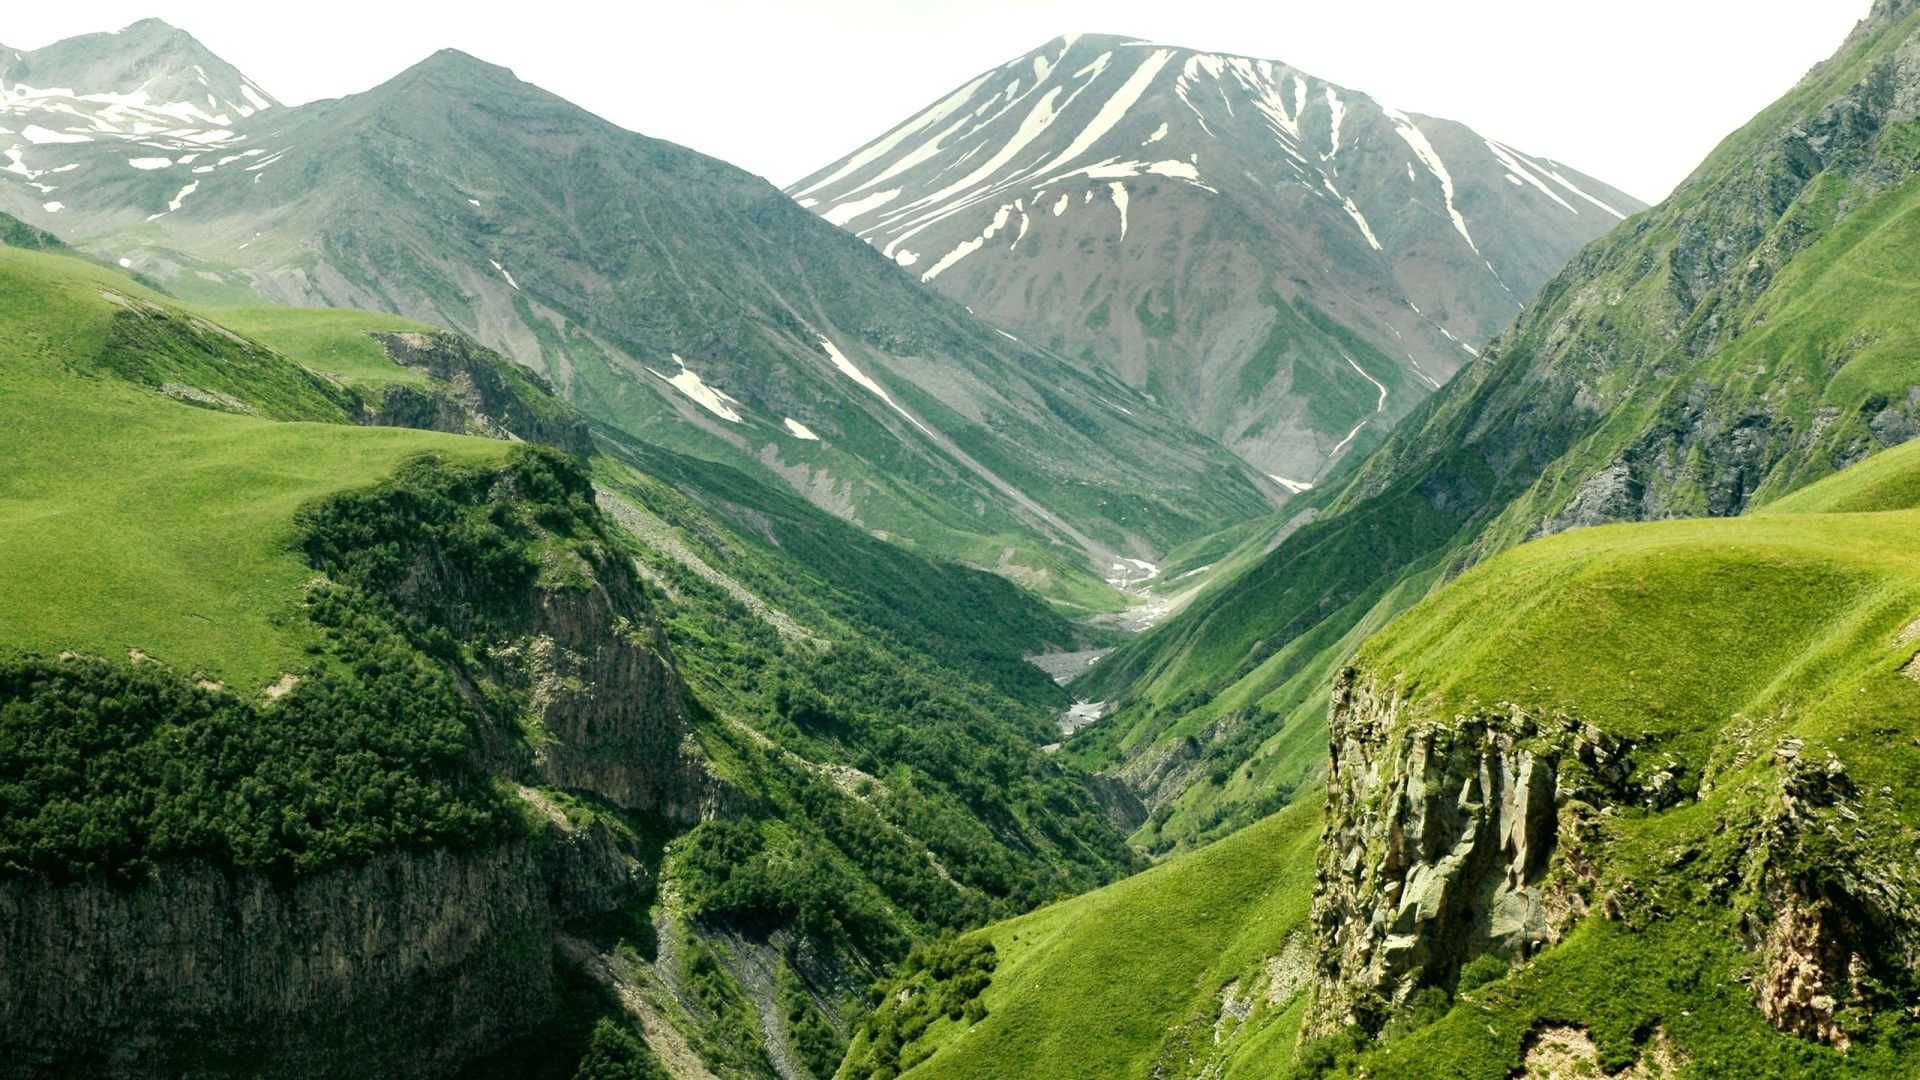 The Caucasus Mountains